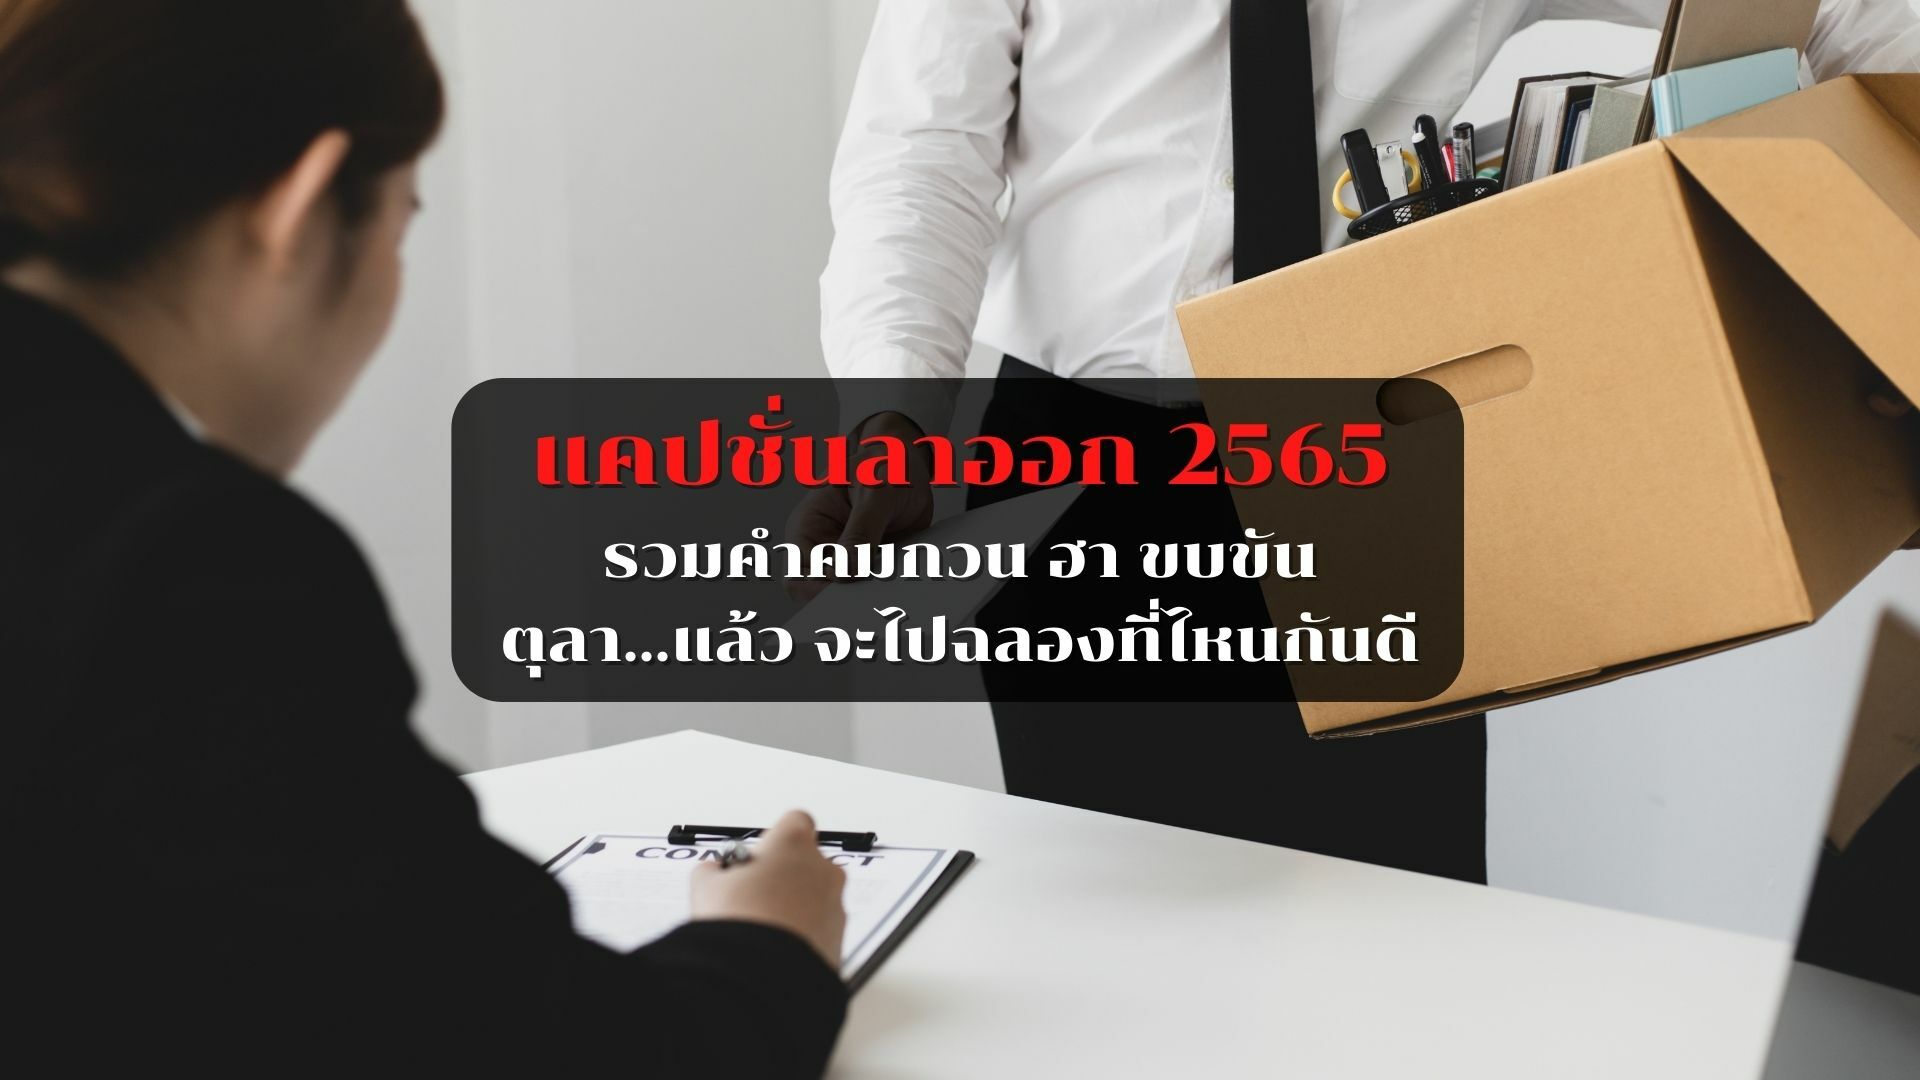 แคปชั่นลาออก 2565 พักเรื่องเครียดด้วยคำคมกวน ๆ สั้น ๆ | Thaiger ข่าวไทย